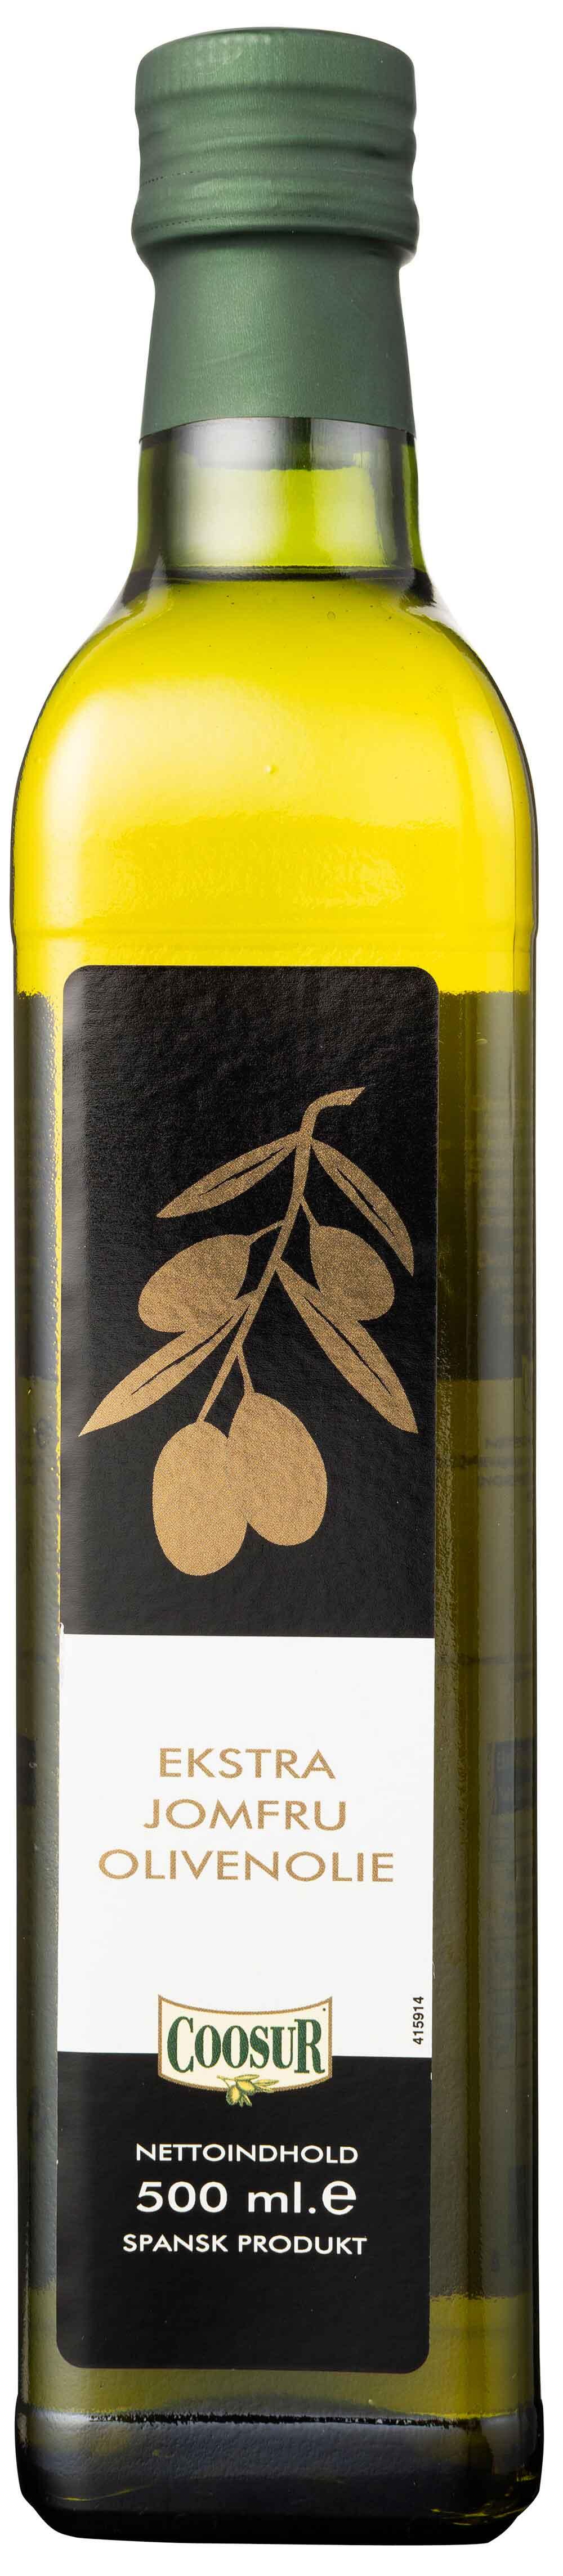 Ekstra jomfru olivenolie Coosur